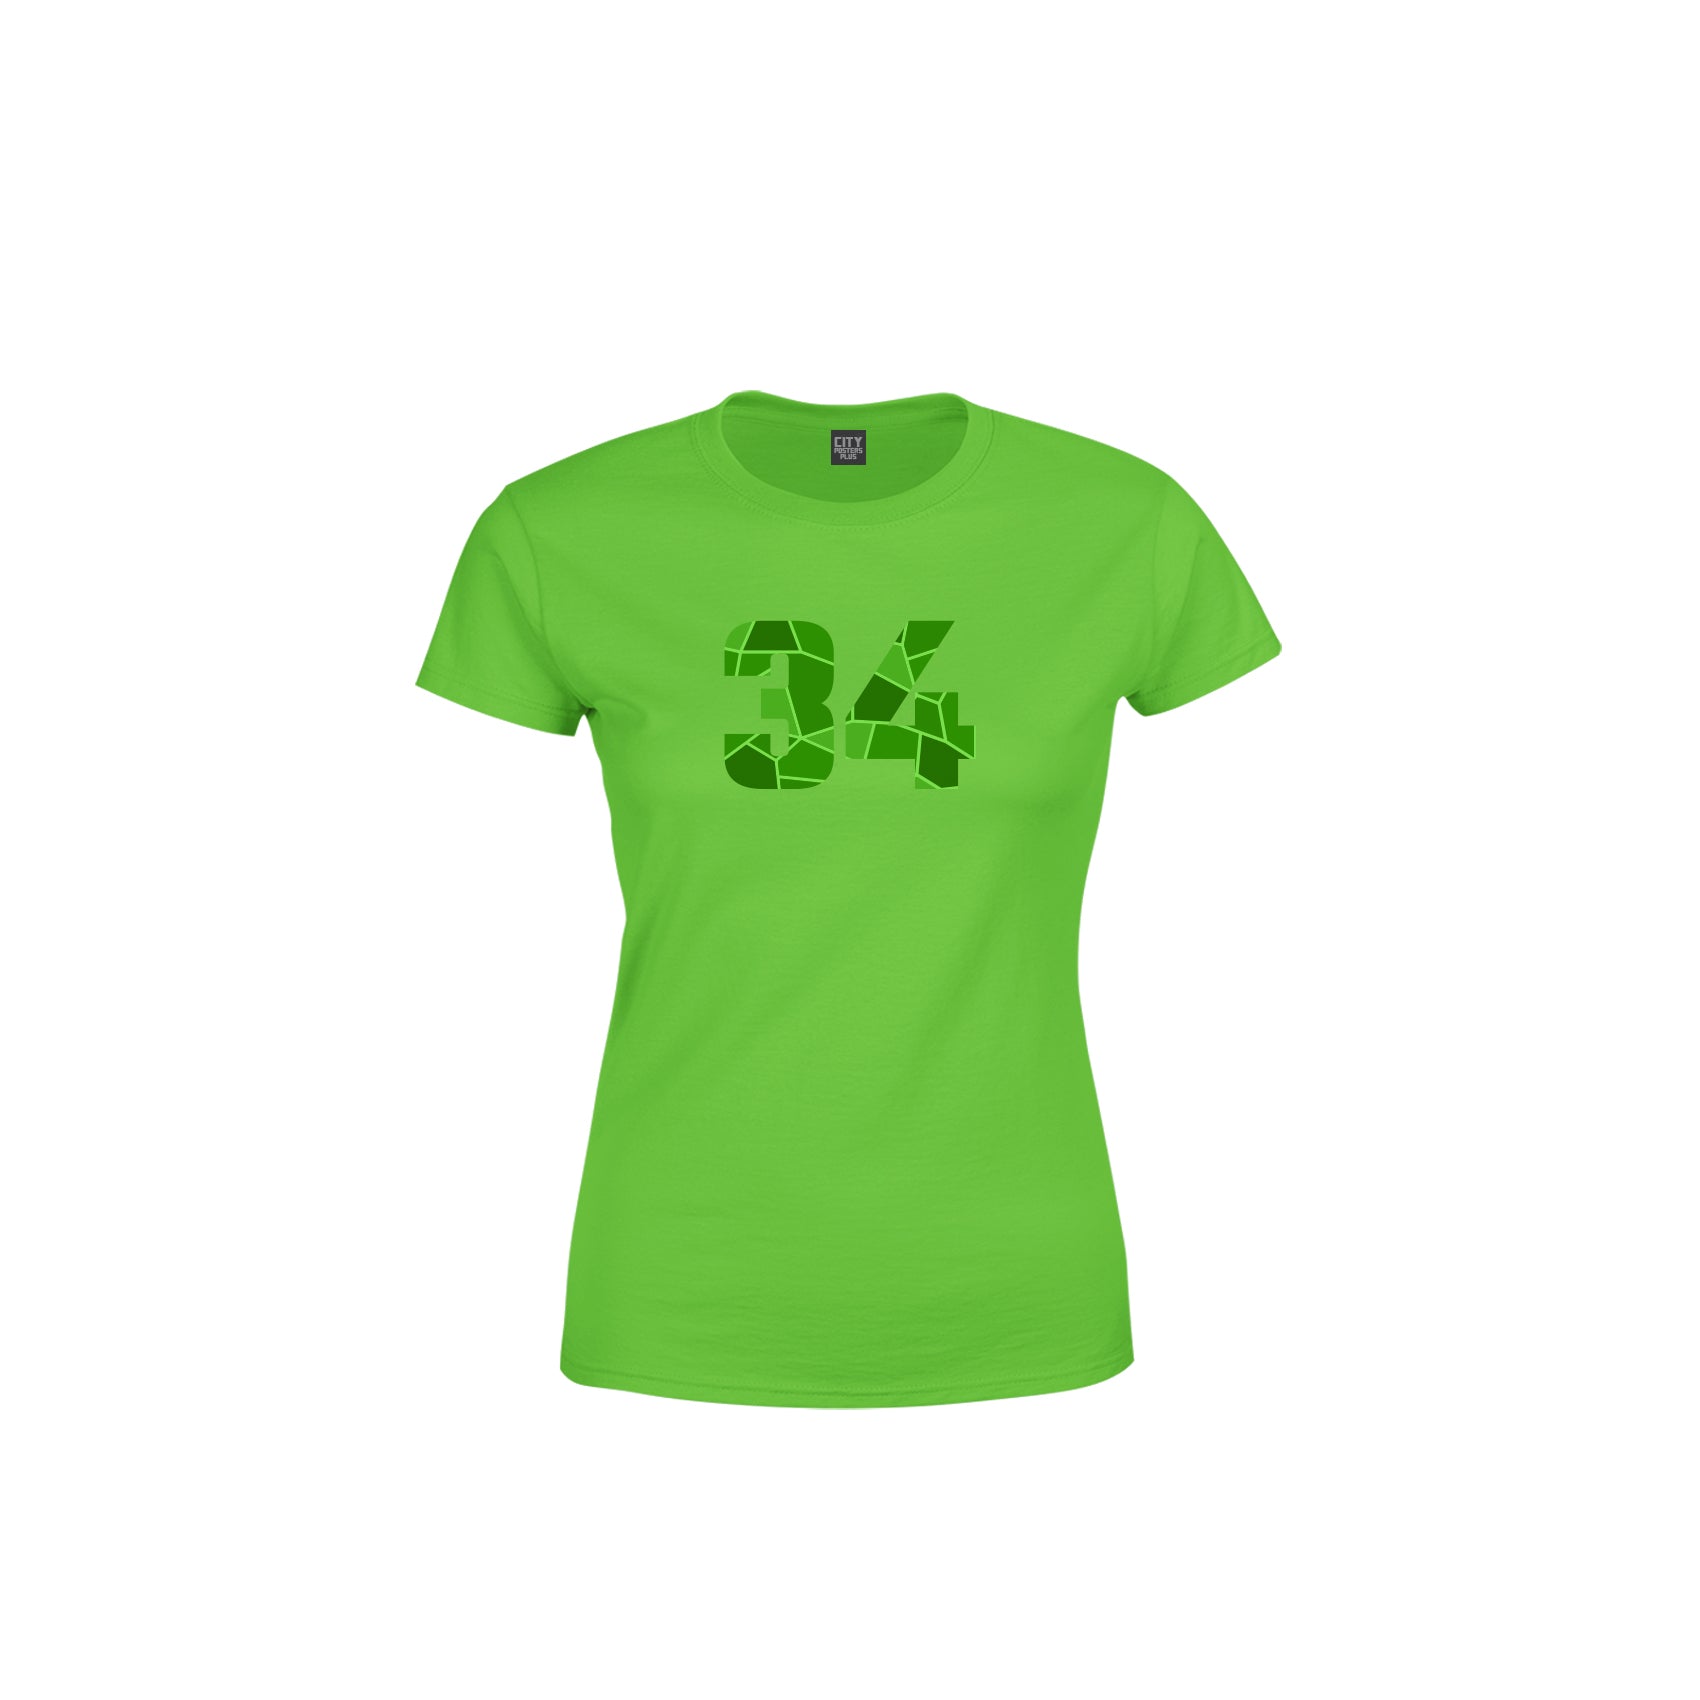 34 Number Women's T-Shirt (Liril Green)